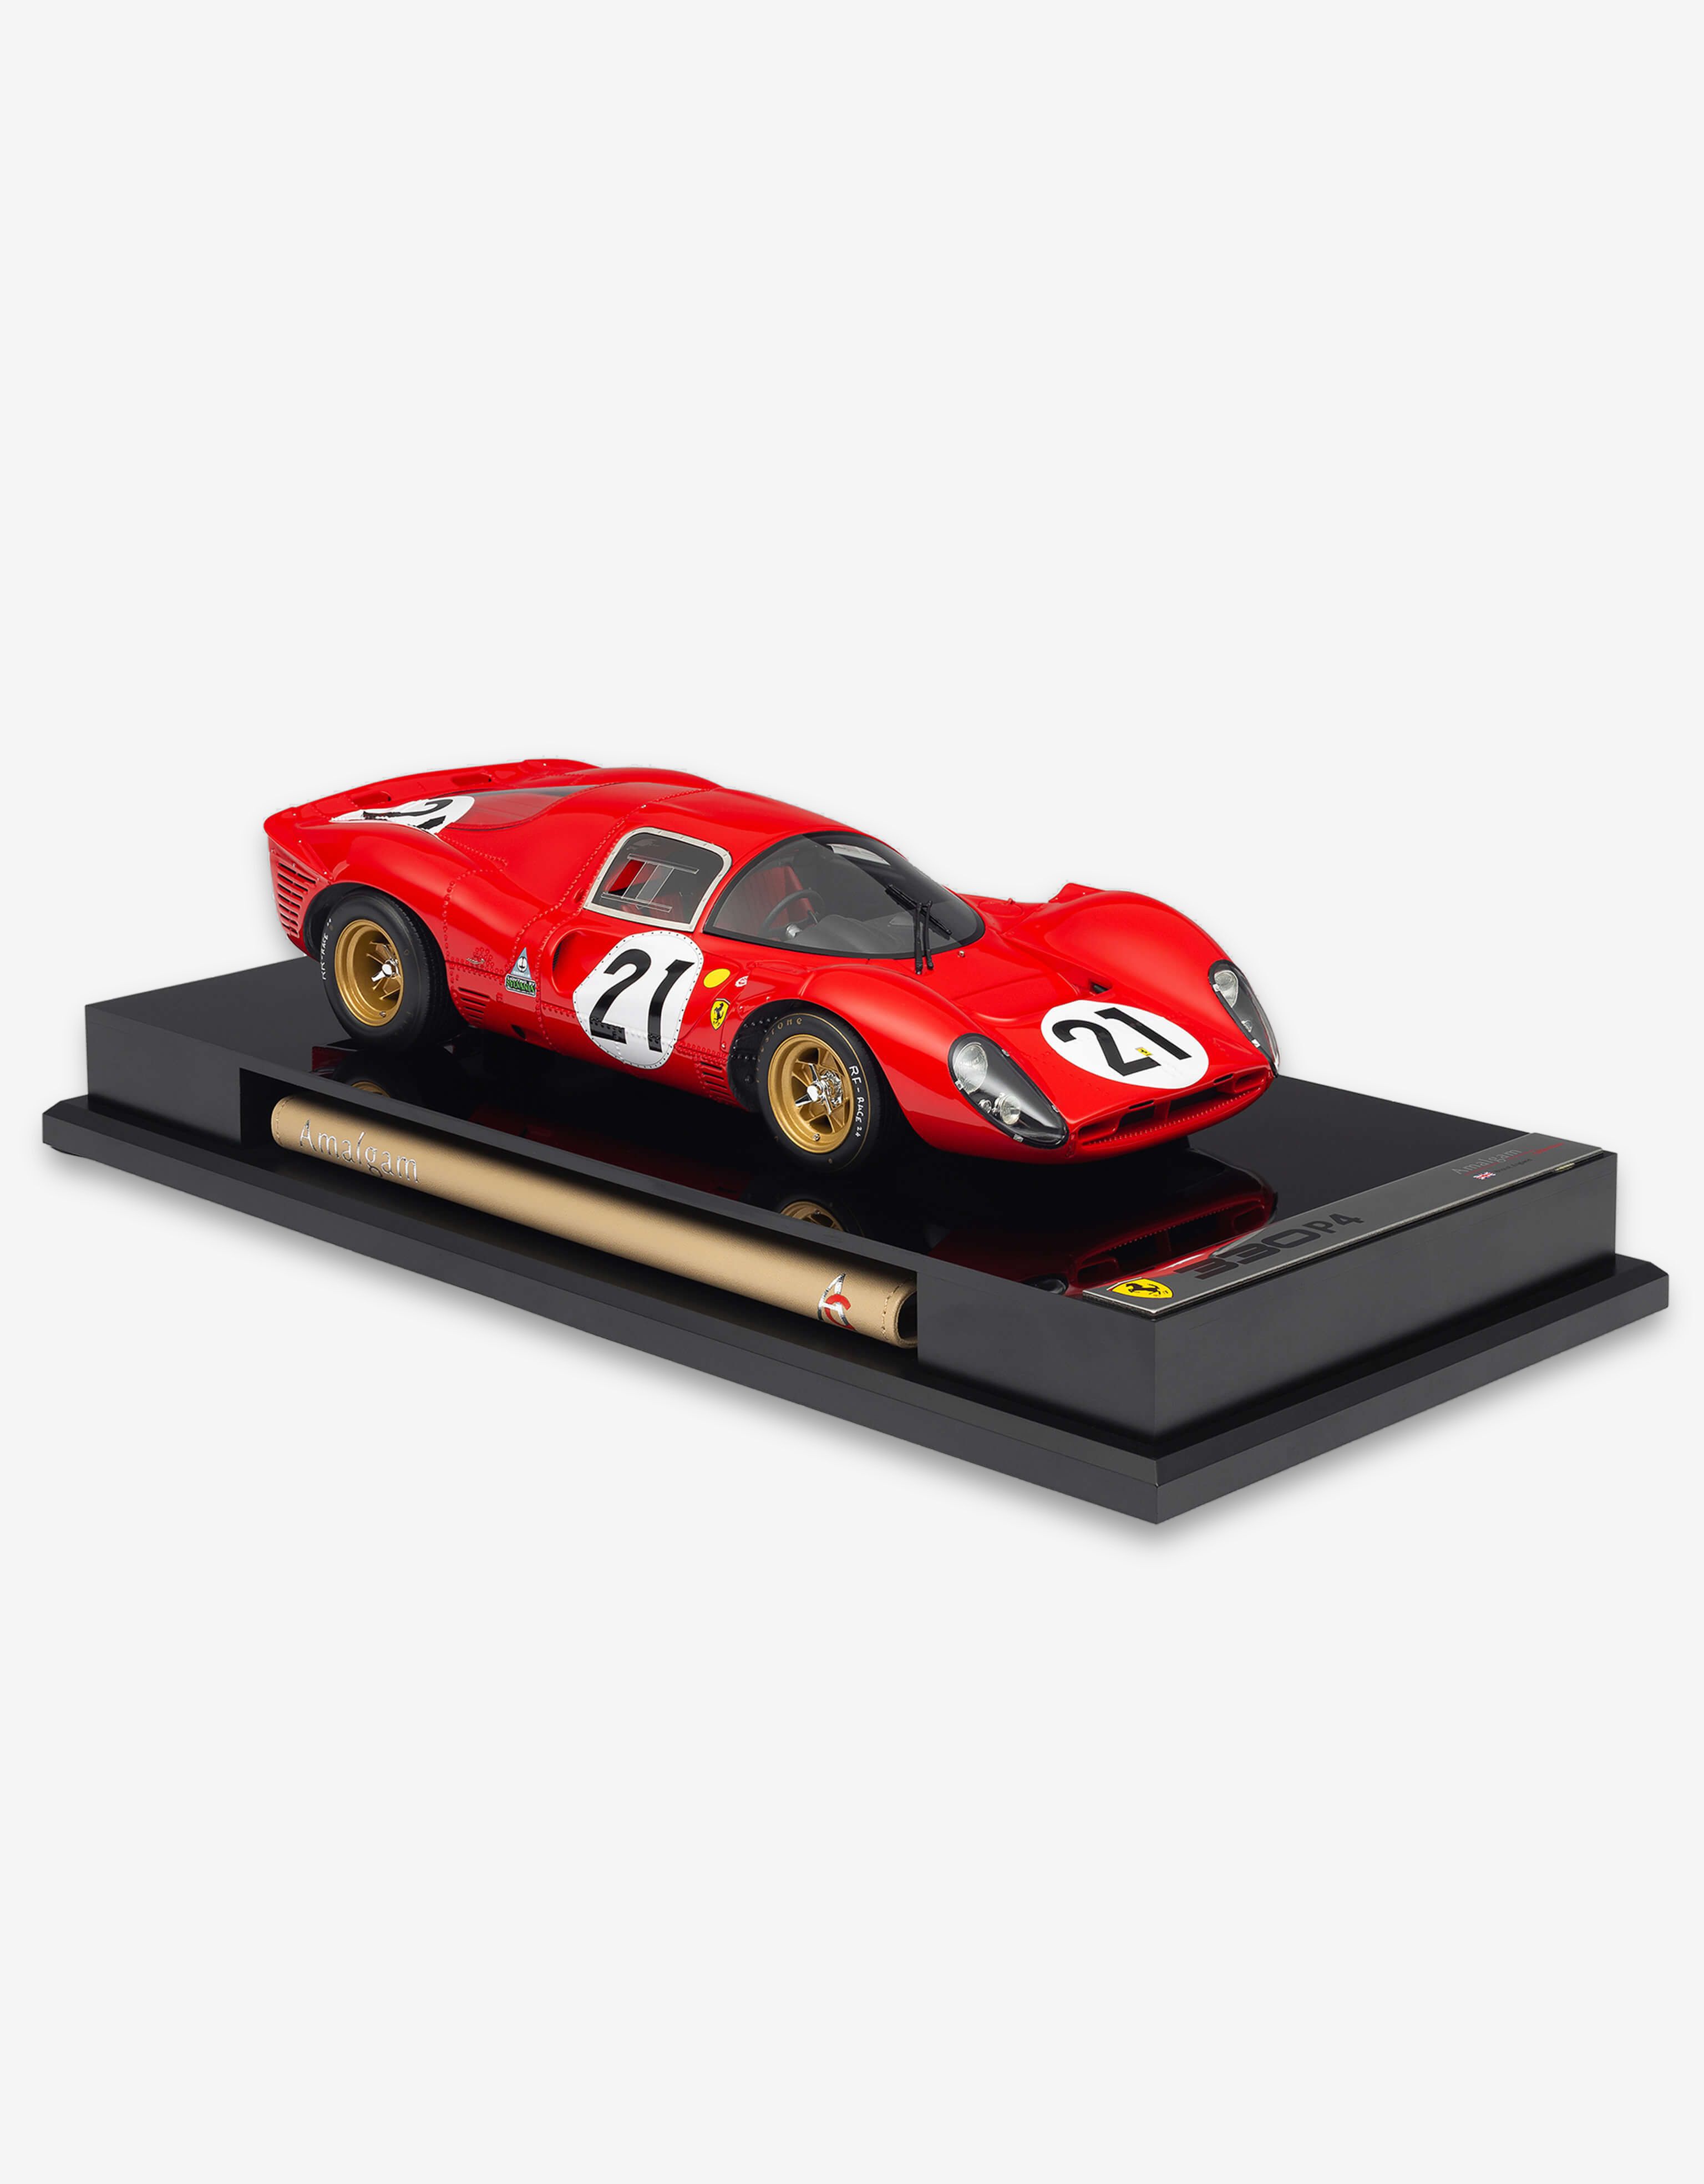 Ferrari Ferrari 330 P4 model in 1:18 scale 红色 L7588f